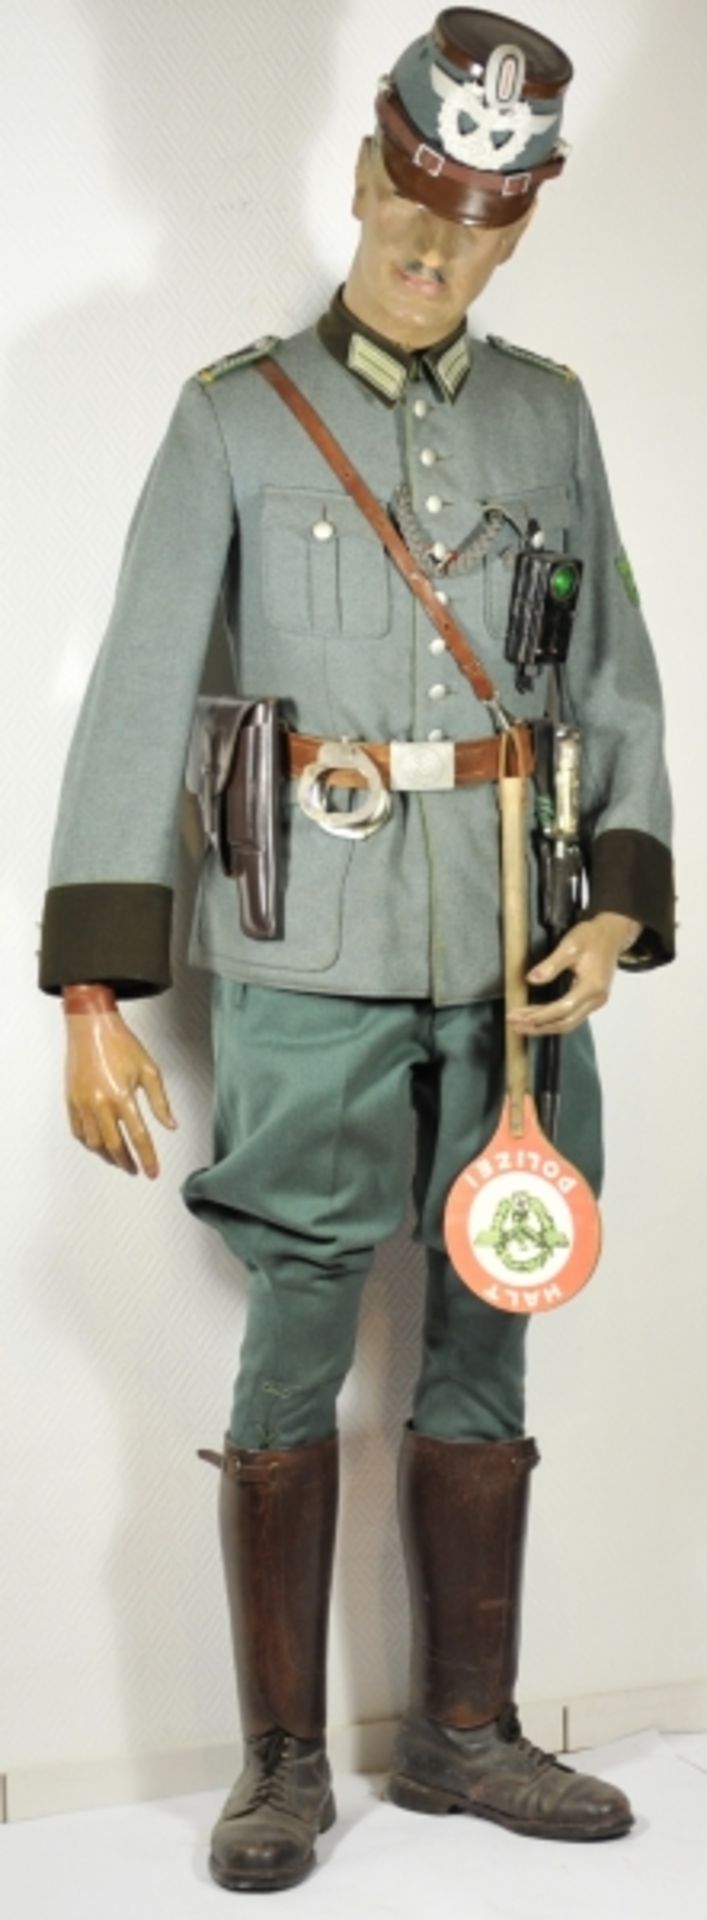 Uniformensemble eines Oberwachtmeister der Gendarmerie.Feldbluse mit vernähtem Band zum KVK II.